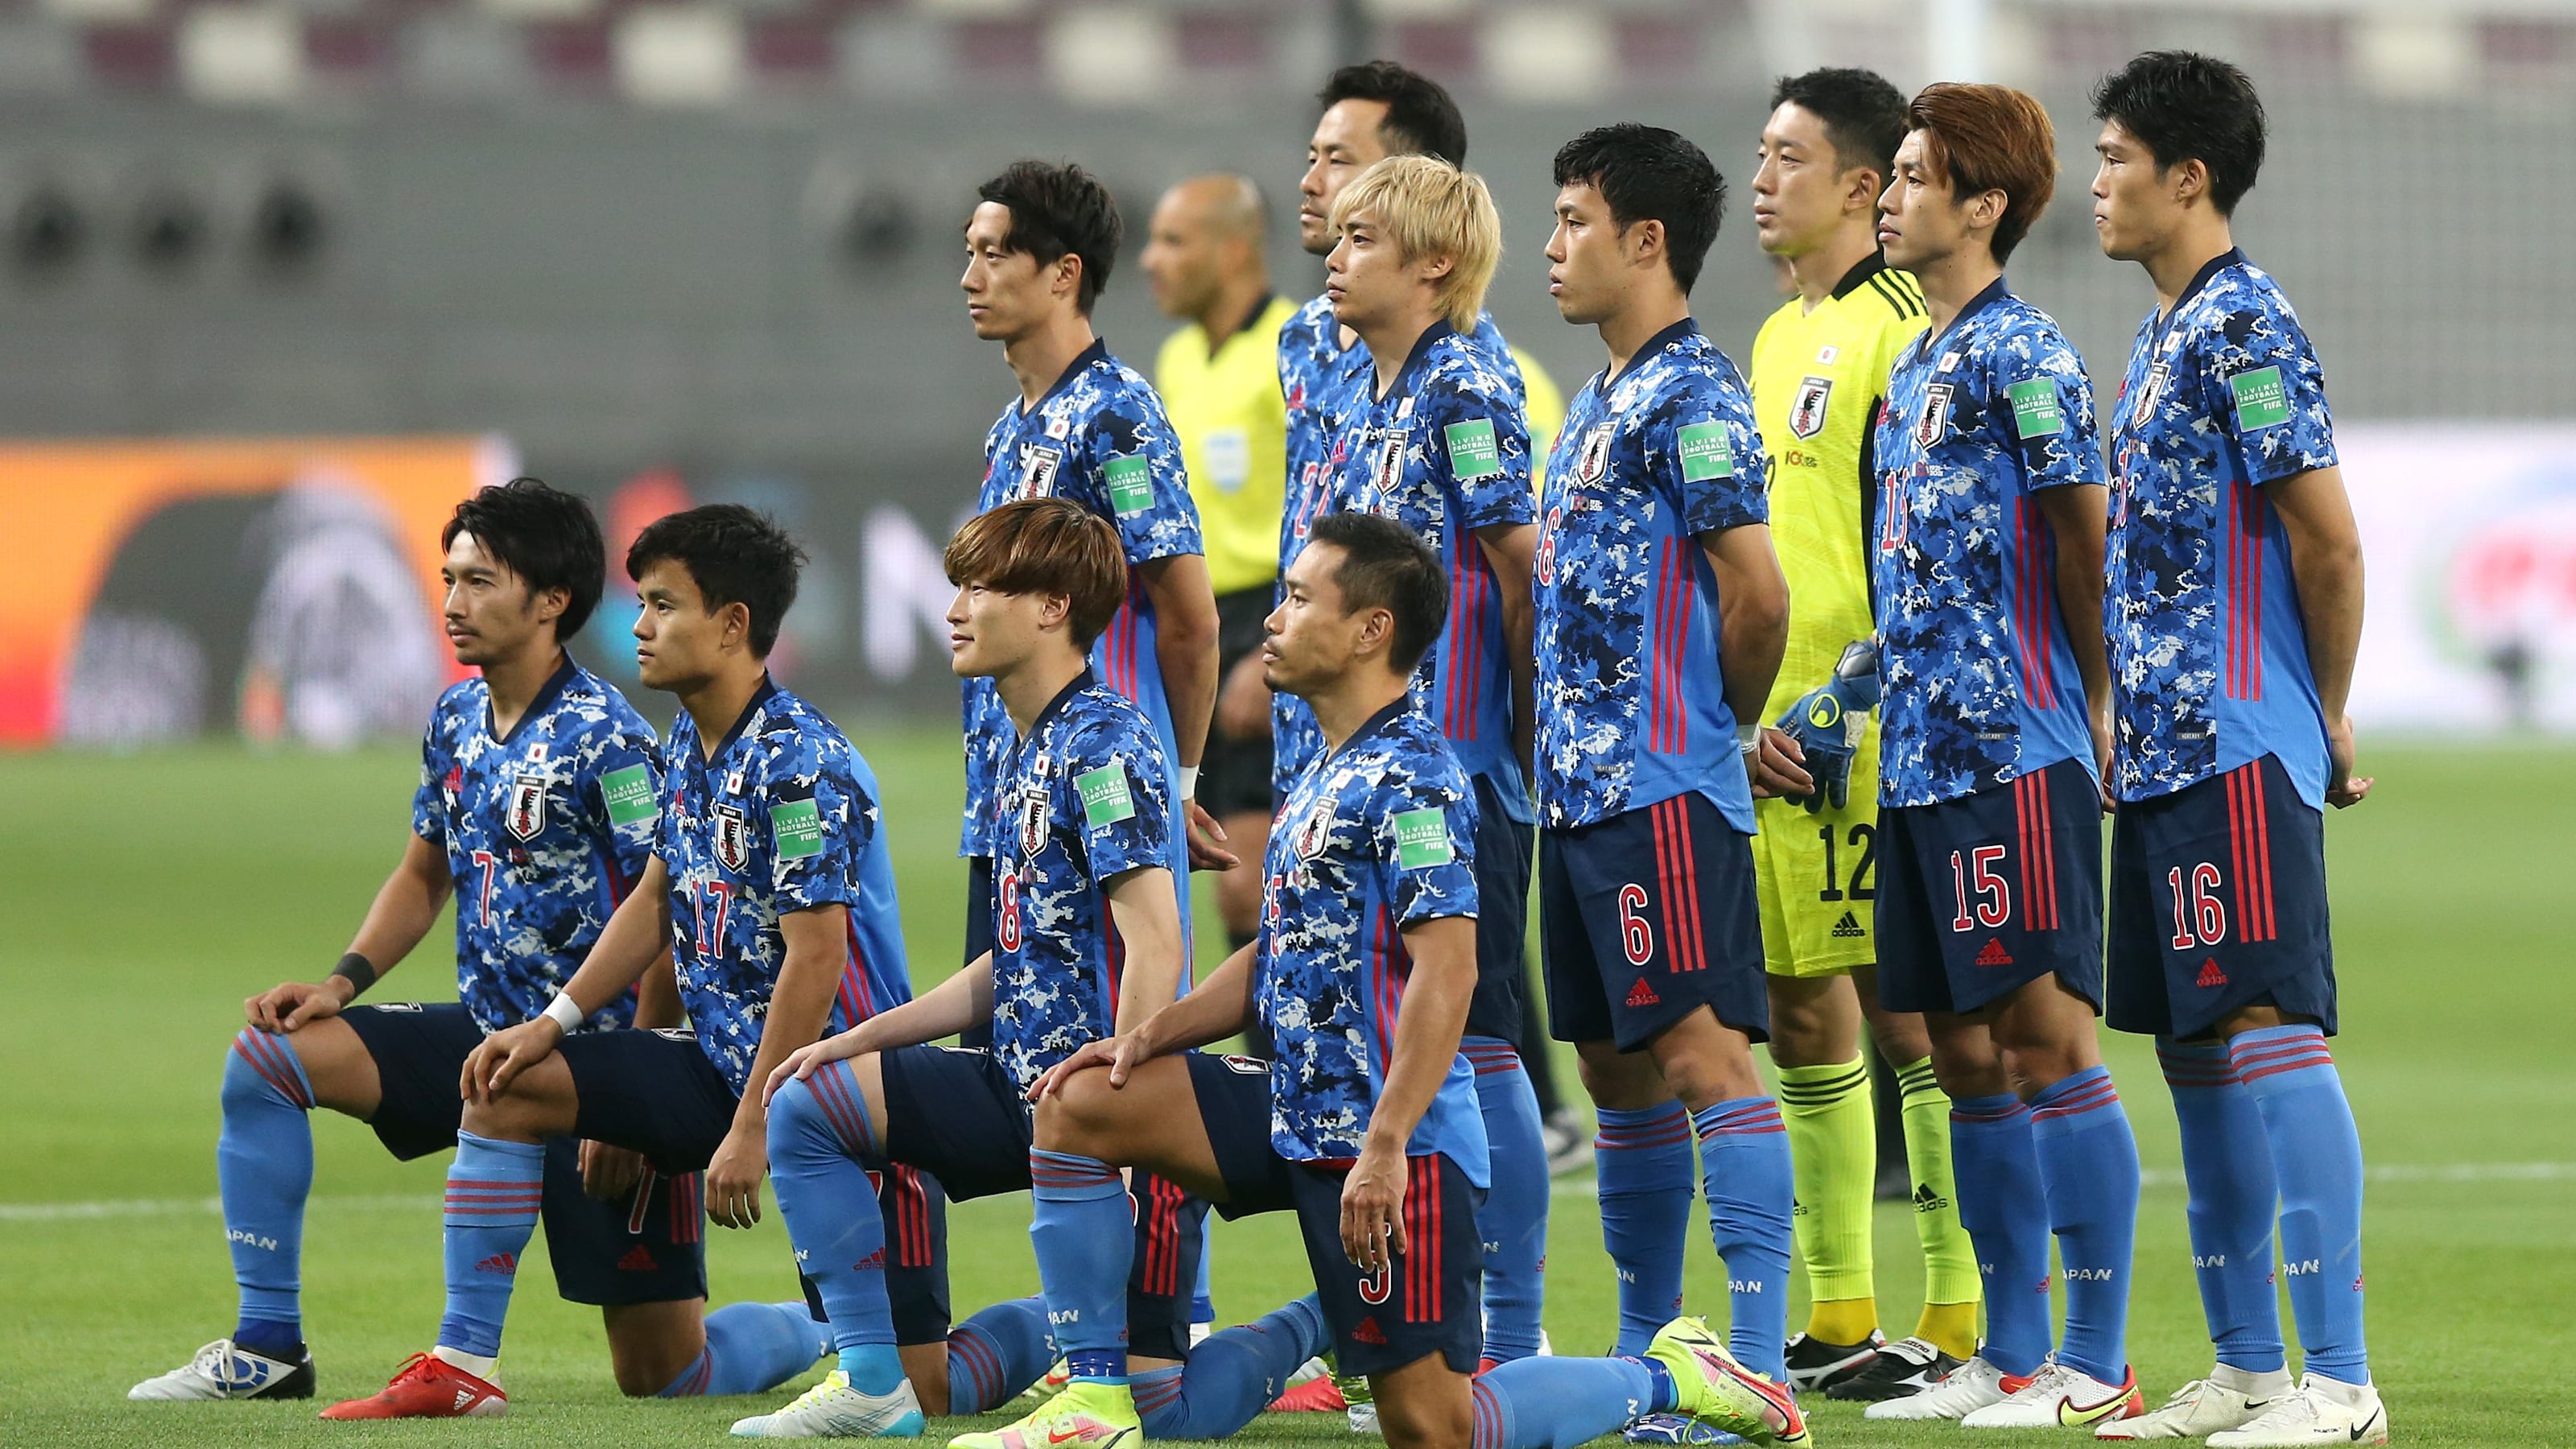 サッカー Jfaが各カテゴリーの22年日程を発表 Samurai Blueは11月開幕のw杯に向け強化